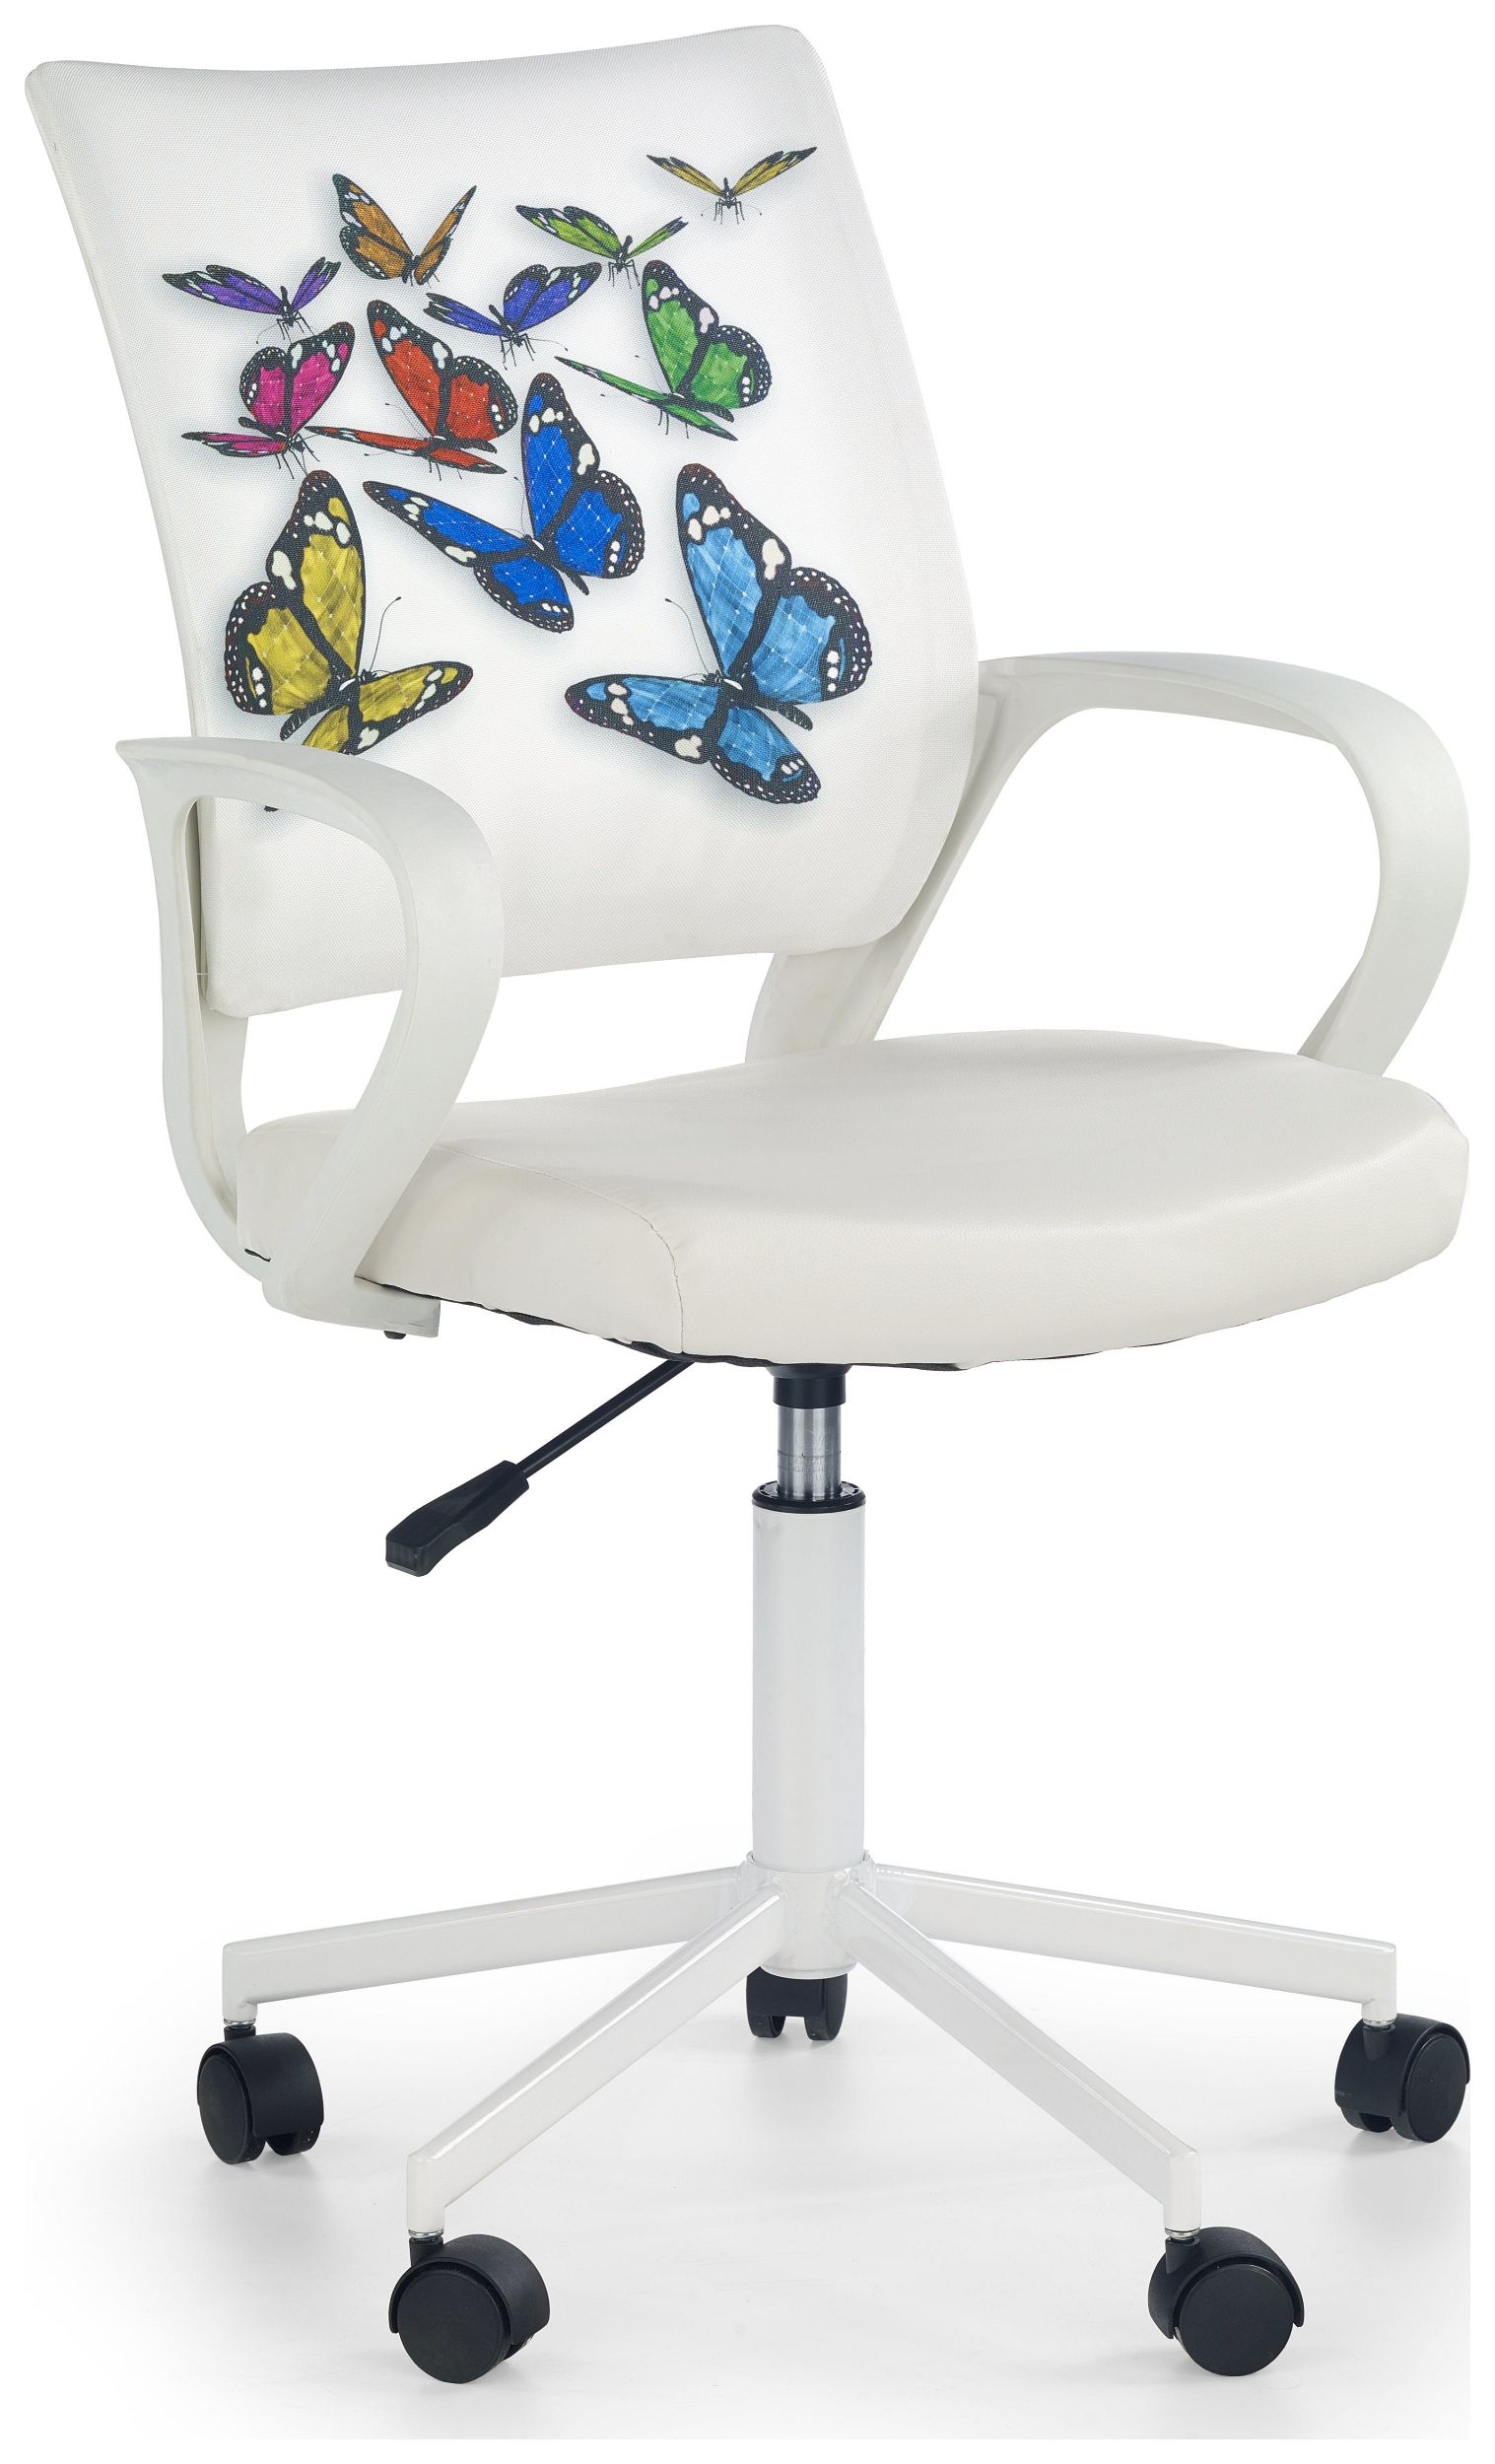 Stylefy Ibis Butterfly Bürostuhl Weiß Schmetterling